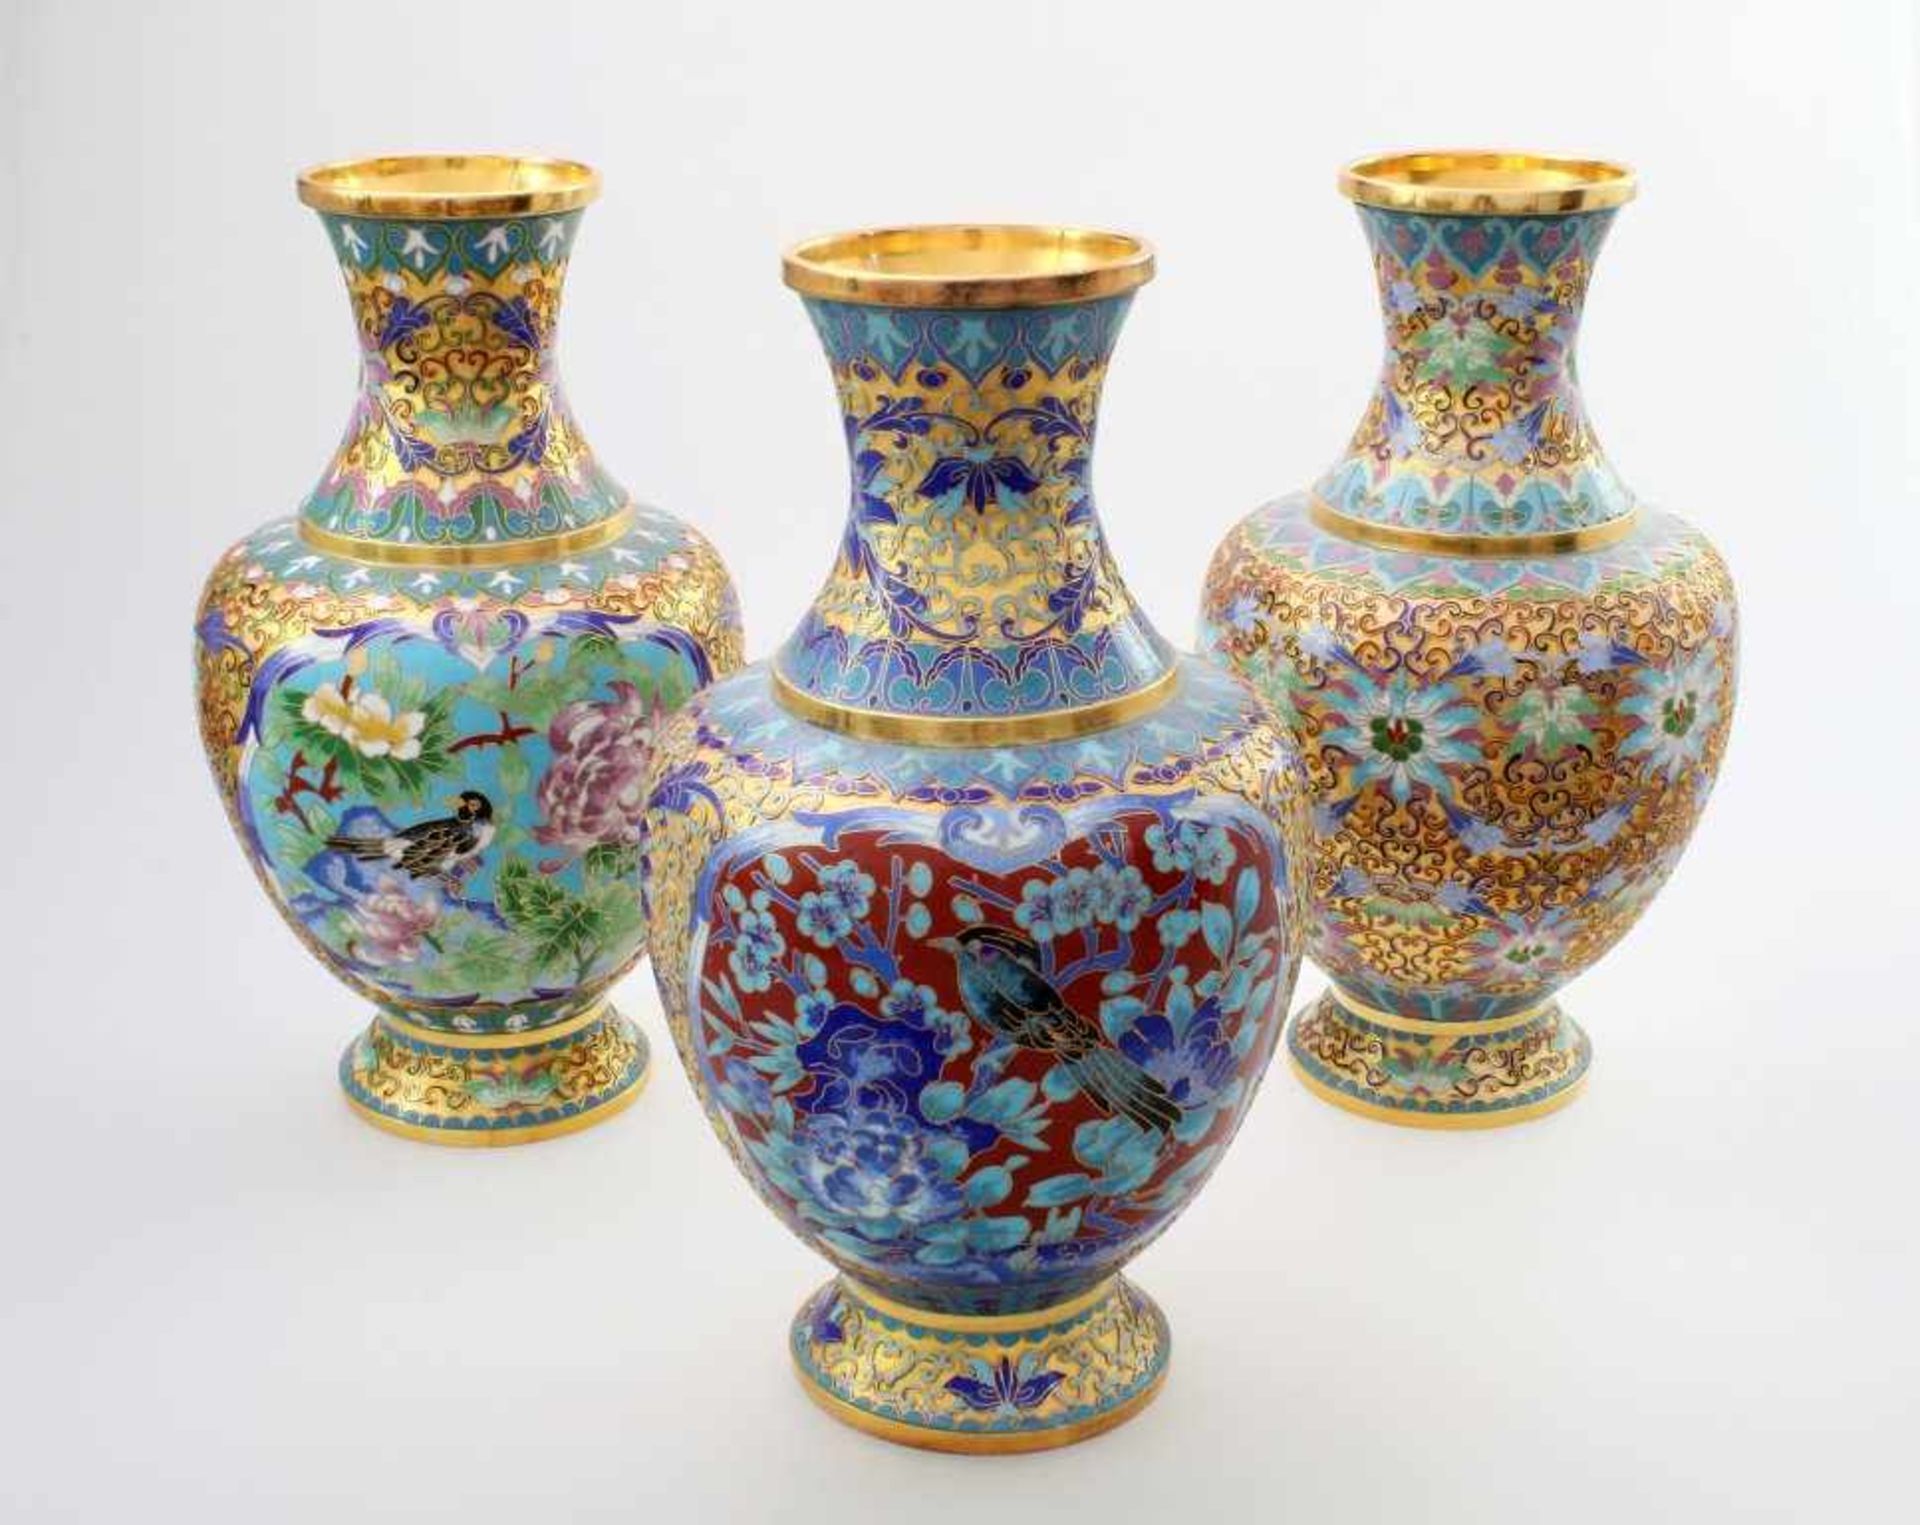 3 Cloisonné Vasen China Bauchiger Körper, feine Cloisonnétechnik in vorherrschend blauen und